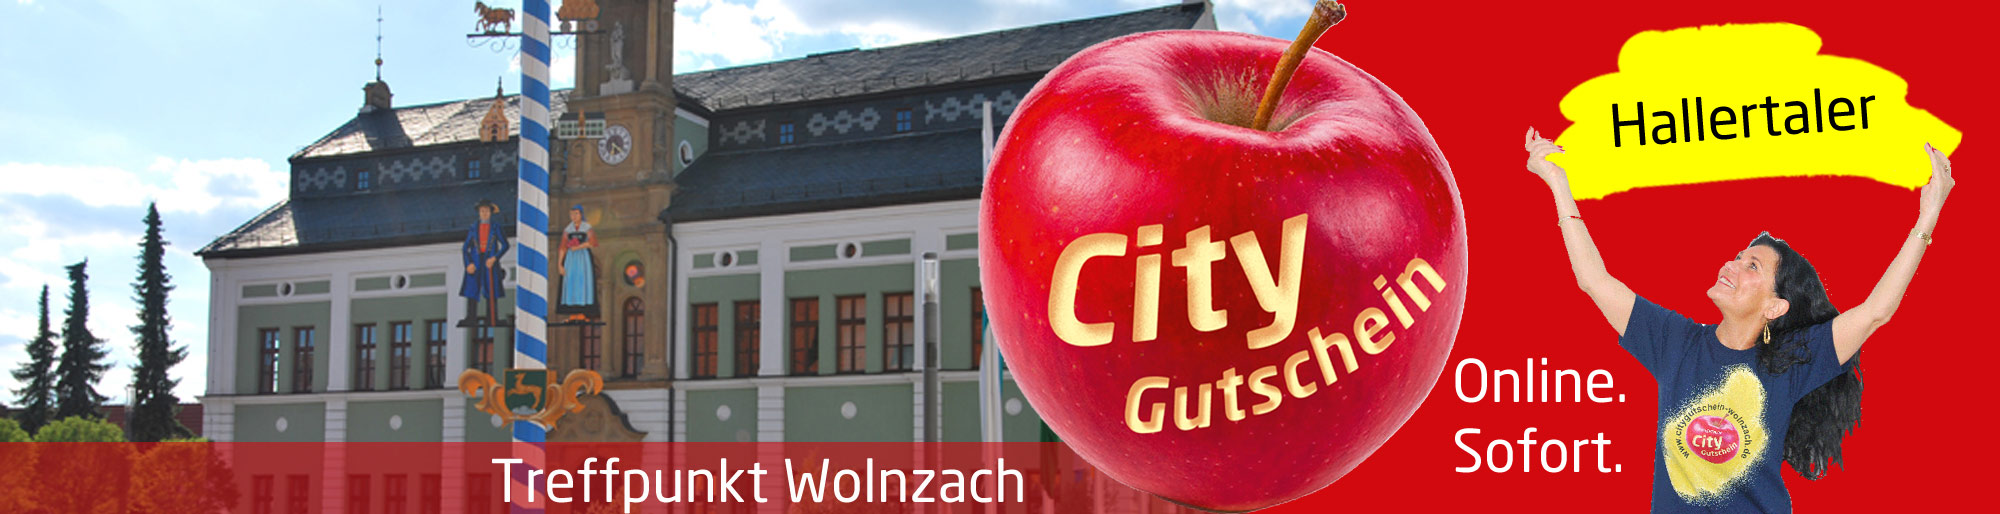 City Gutschein Wolnzach